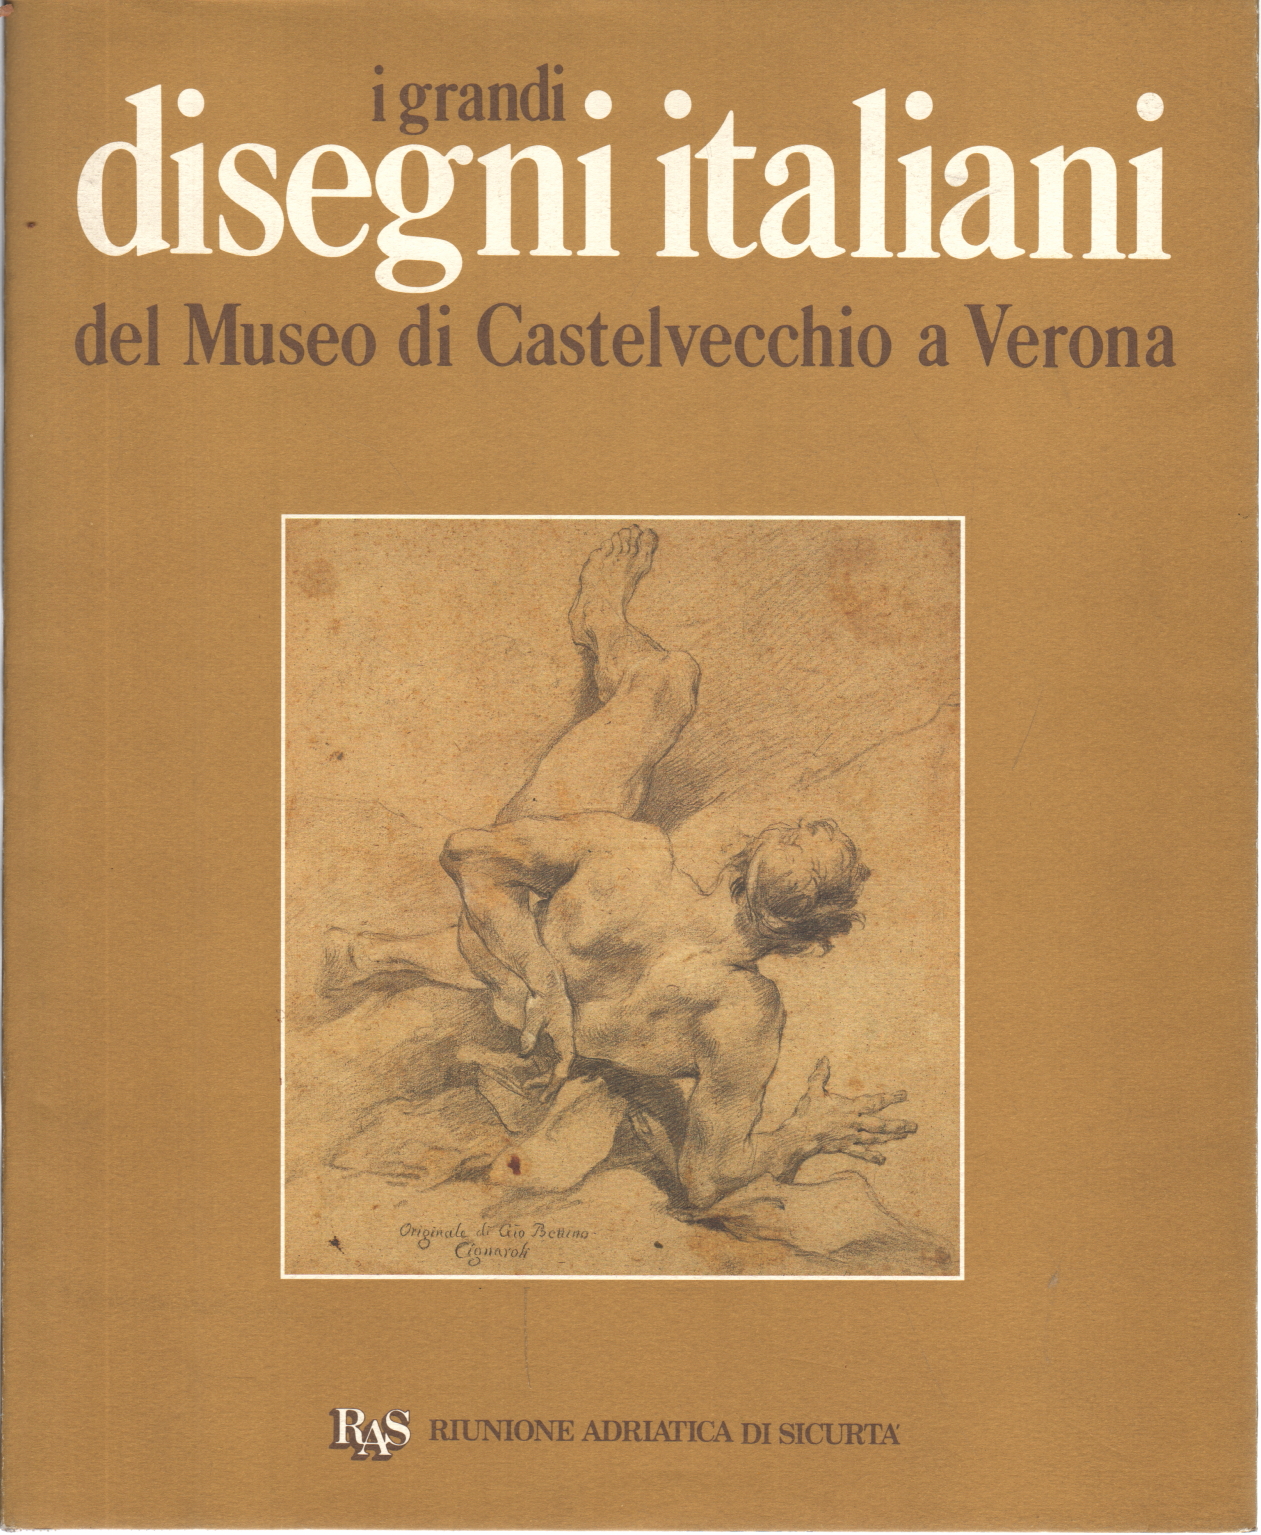 Los grandes dibujos italianos del Museo de